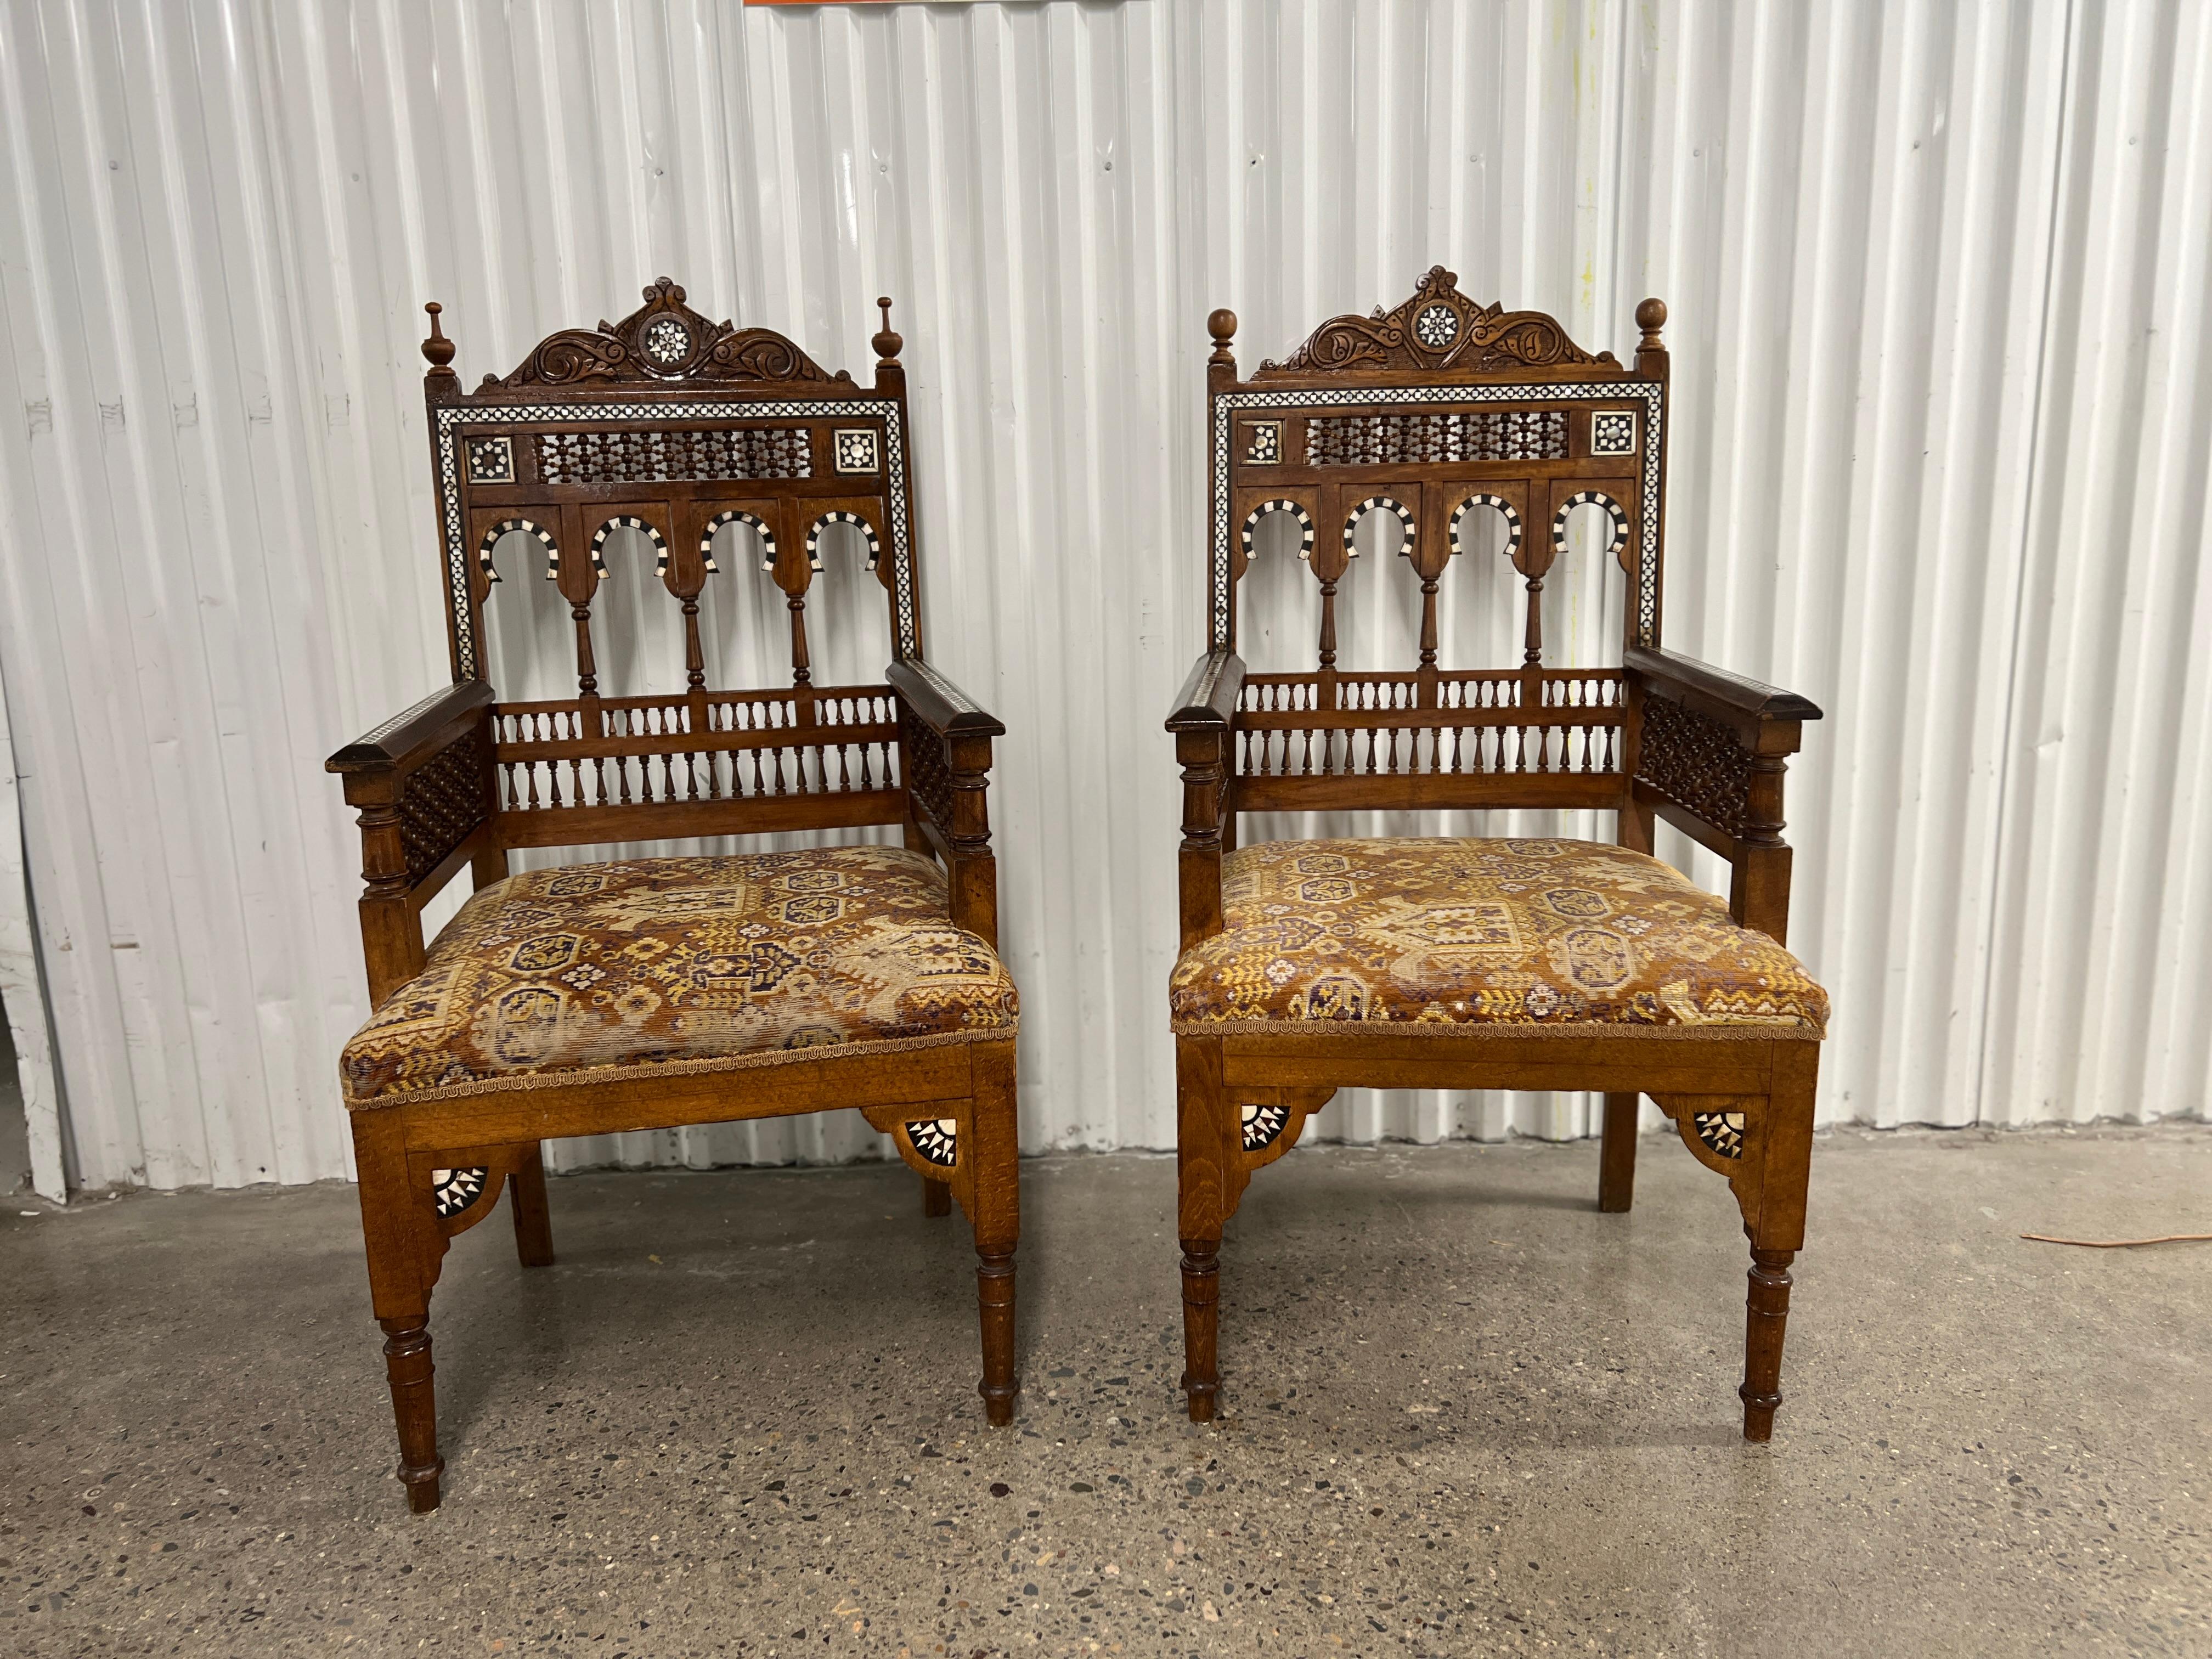 Syrisch oder ägyptisch, um 1900.

Eine beeindruckende antike Arabesken-Möbelgruppe mit einem Paar Sesseln und einem Sofa. 

Das Sofa und die Stühle im maurischen Stil wurden höchstwahrscheinlich in Syrien oder einem anderen Land der Levante im